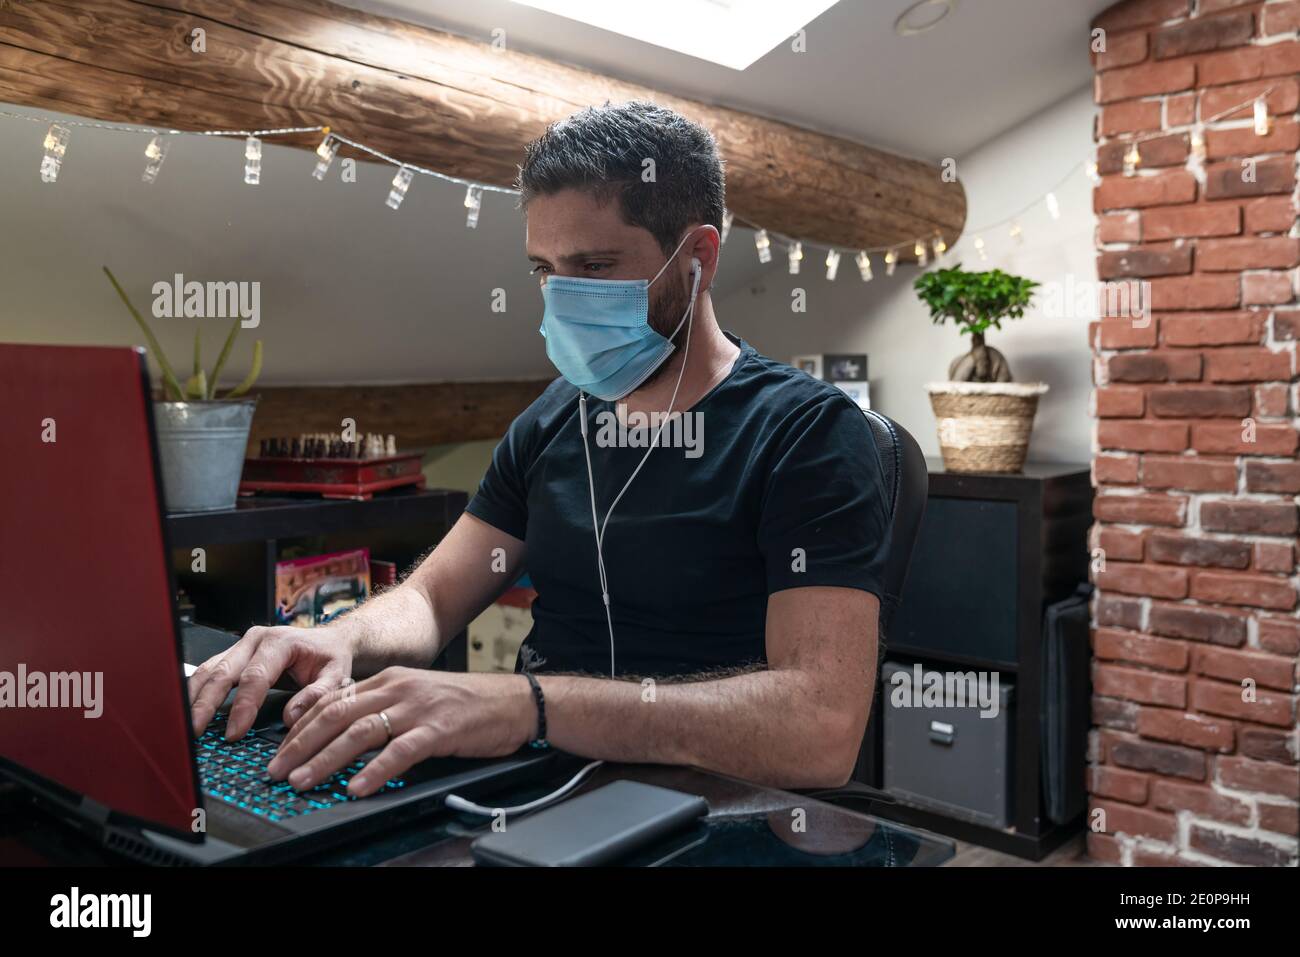 Uomo con maschera chirurgica che lavora da casa causa di confinamento per il coronavirus covid-19 Foto Stock